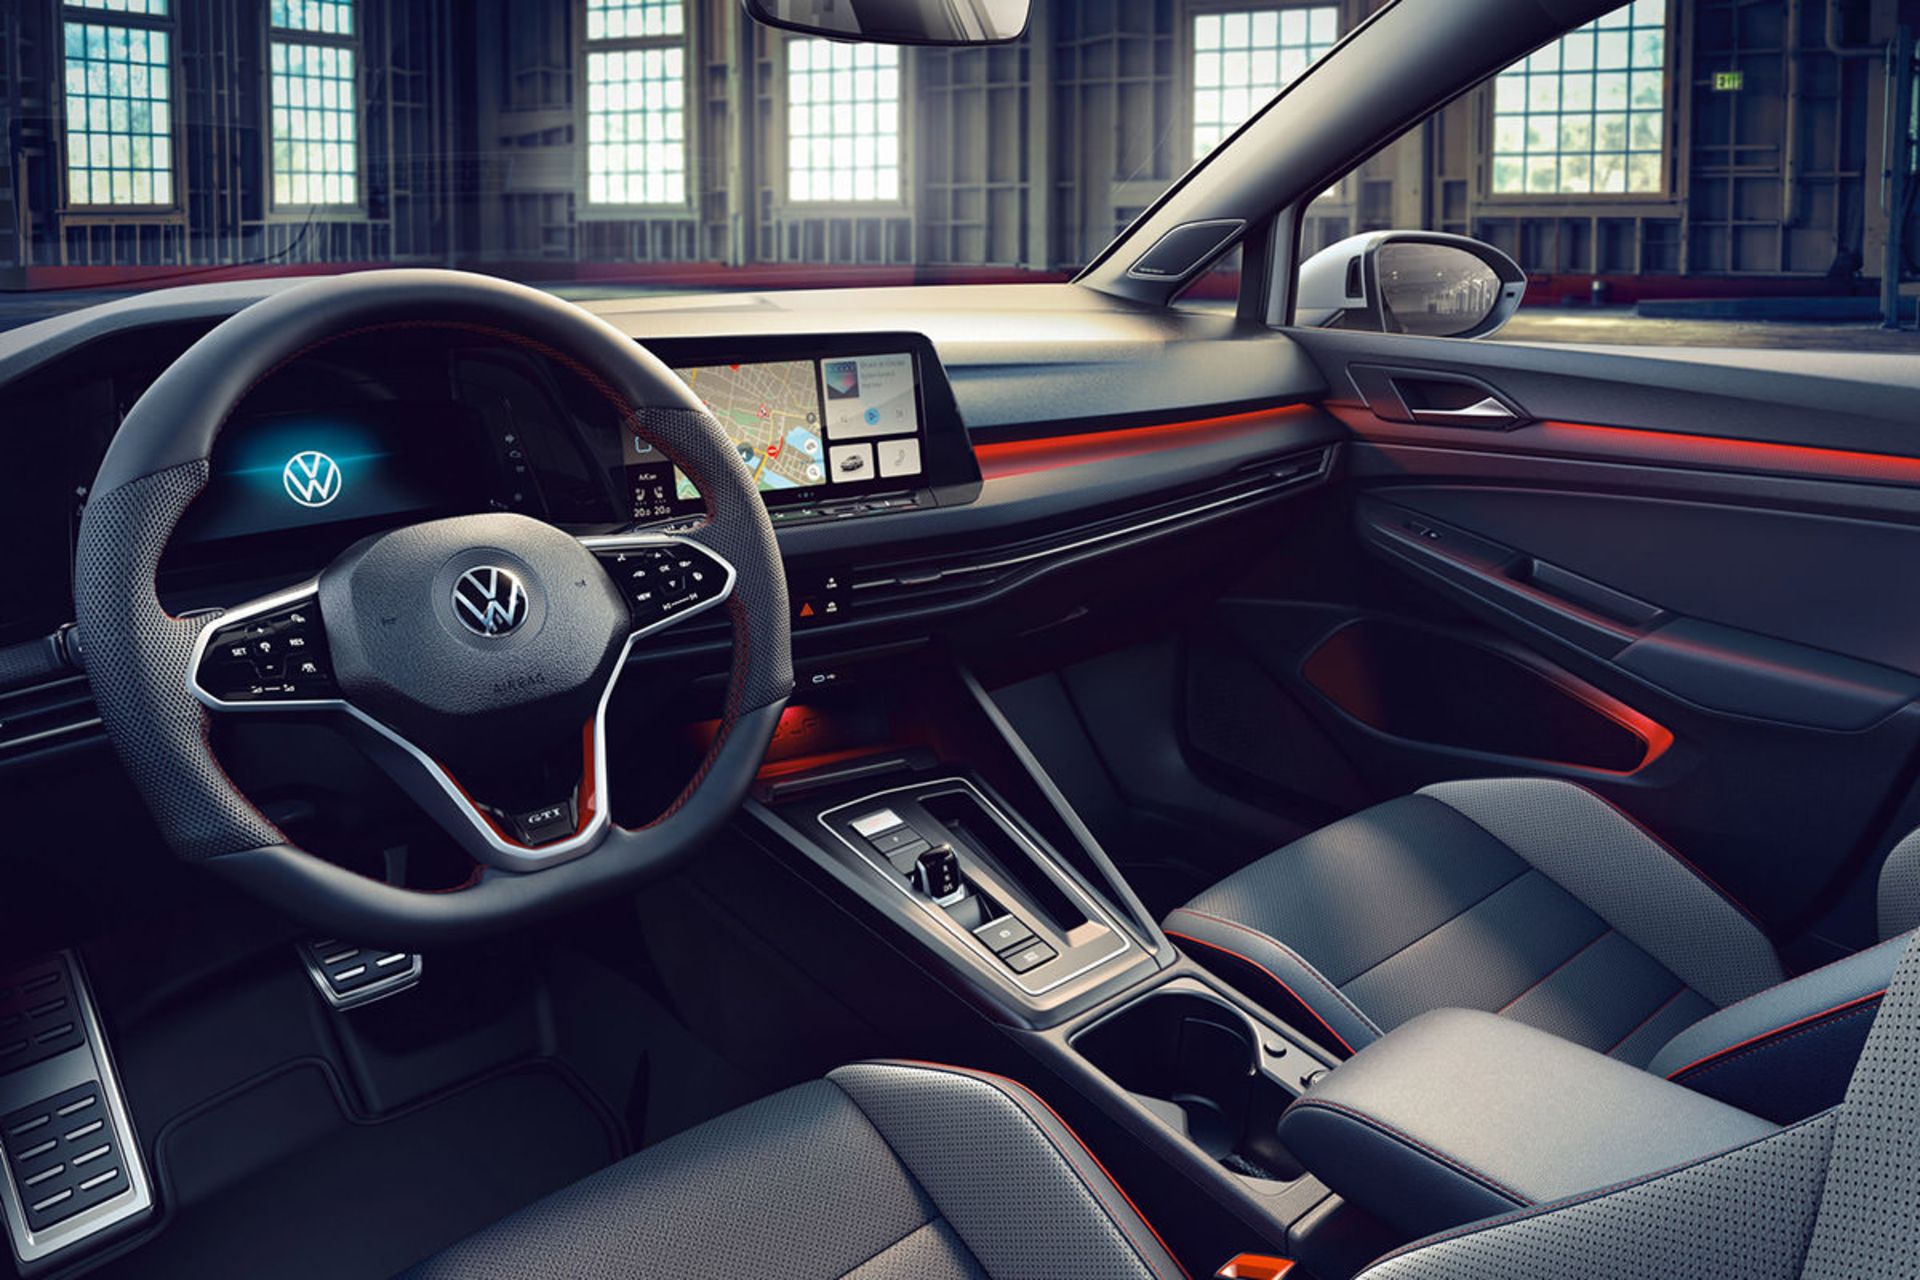 مرجع متخصصين ايران نماي داخل كابين هاچ بك / Hatchback فولكس واگن گلف جي تي آي كلاب اسپرت / 2021 Volkswagen Golf GTI Clubsport سفيد رنگ